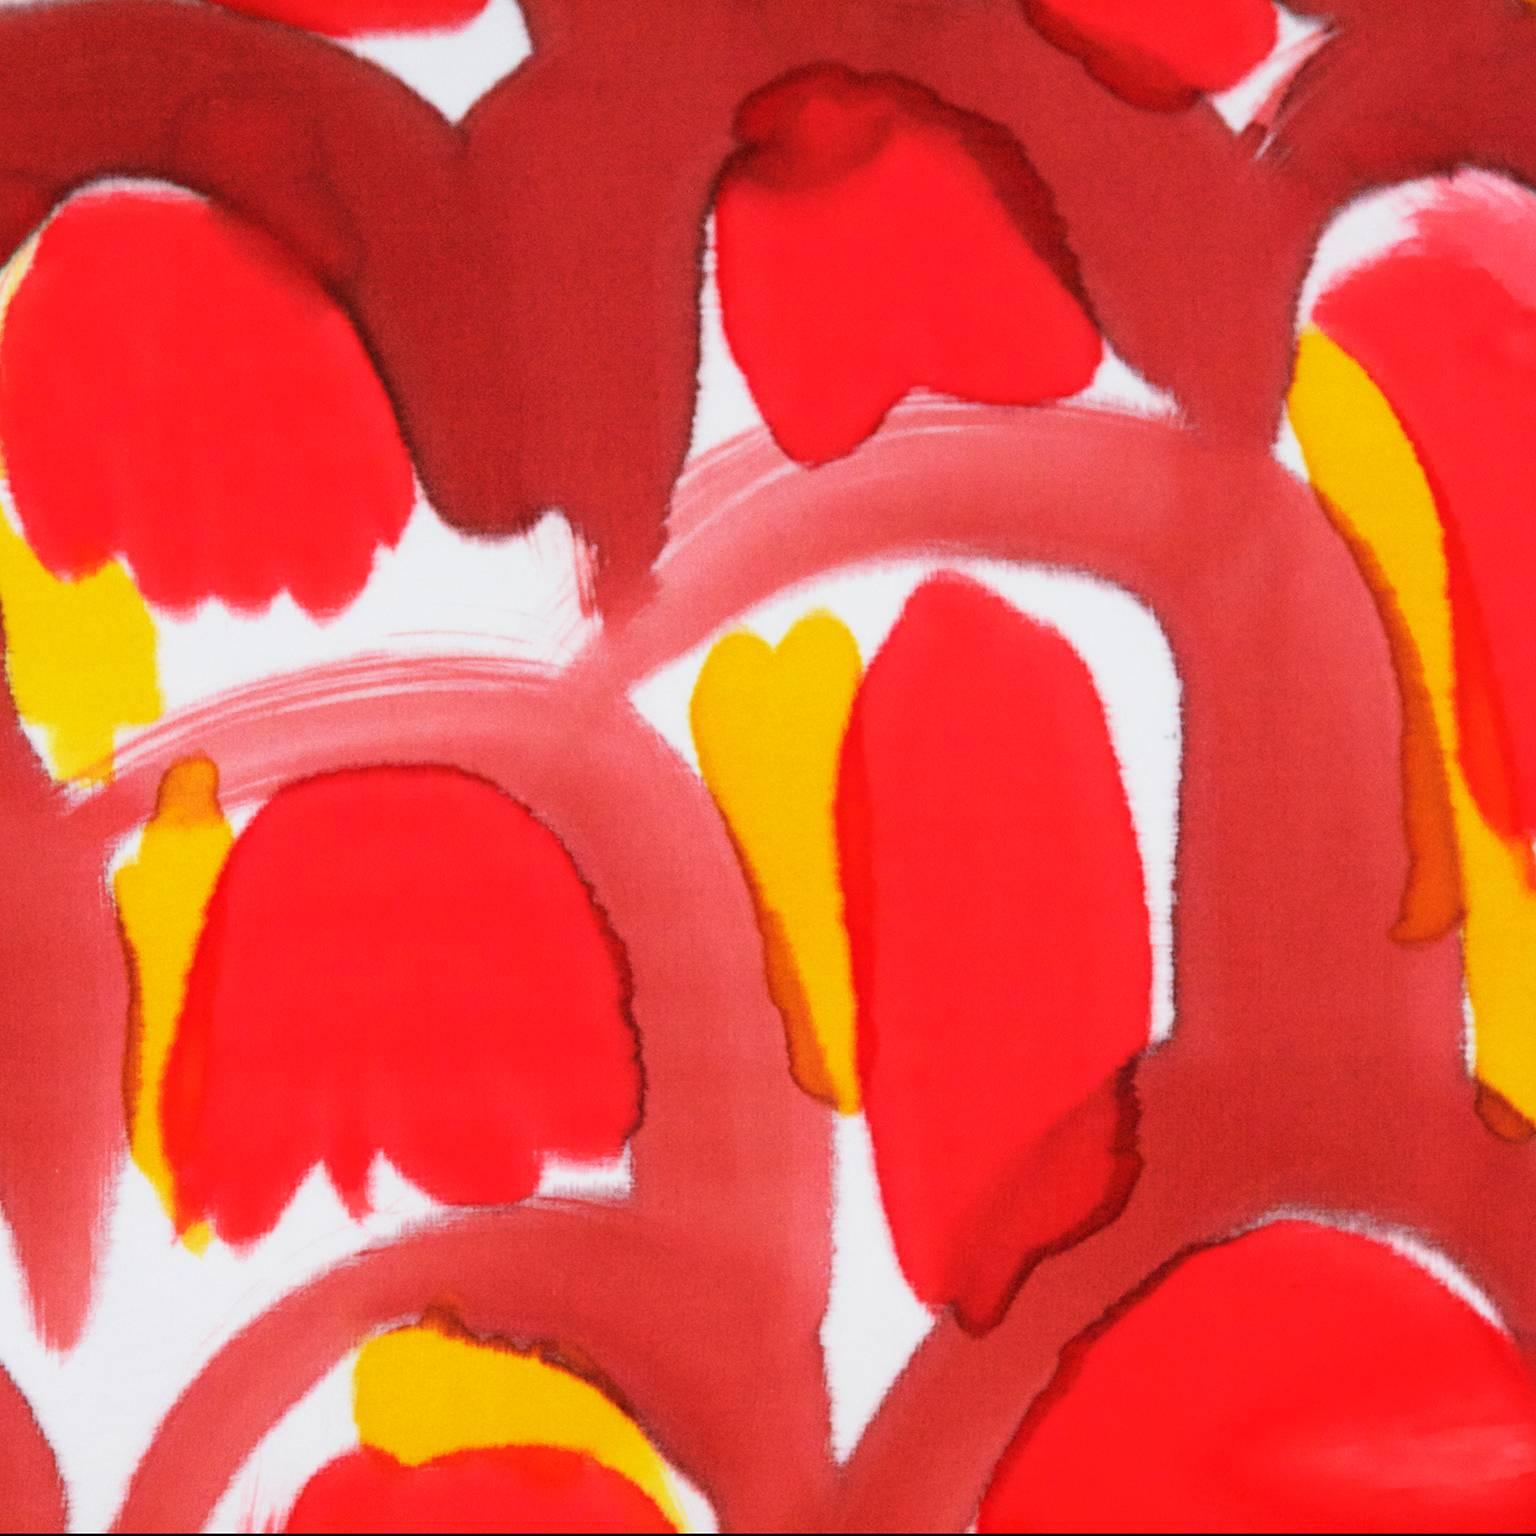 Für Fort Makers malt Naomi Clark lebhafte abstrakte Kompositionen auf Stoffen, die dann zu brauchbaren Objekten verarbeitet werden. Der Malstil der Red Scales ist in der Art und Weise, wie er Form und Farbe beibehält, aber auch konsequent verändert,